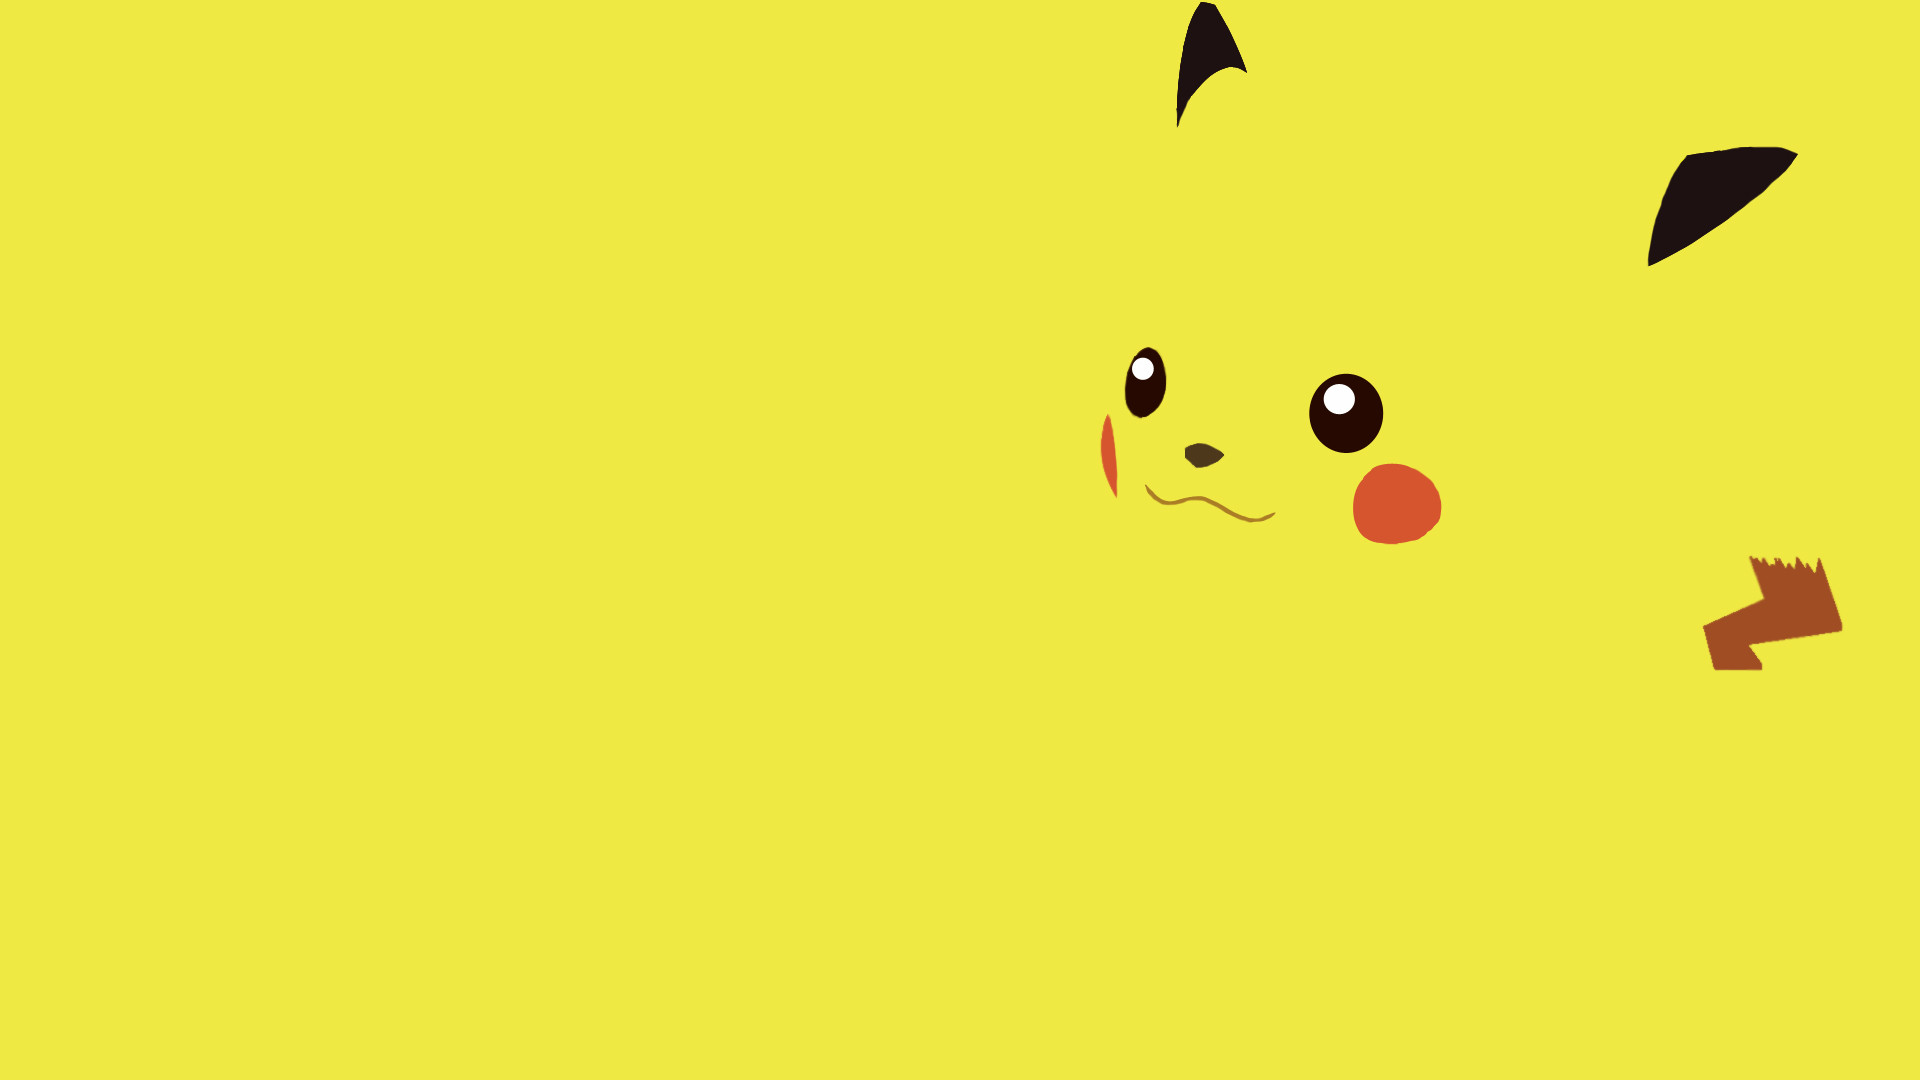 1920x1080 pikachu wallpaper http://ragzon.com/pokemon-xy-it-